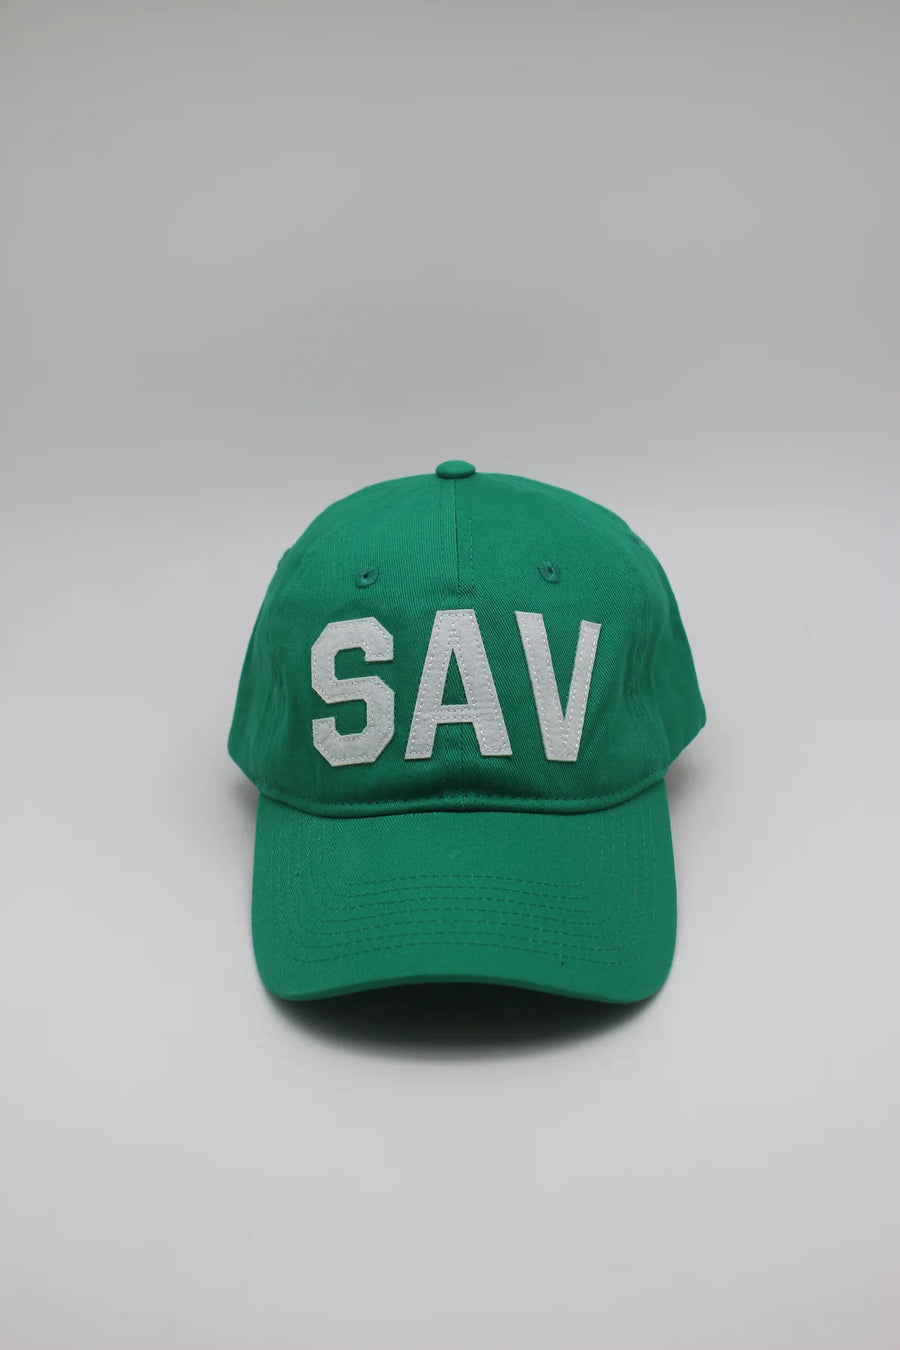 SAV - Savannah, GA Hat